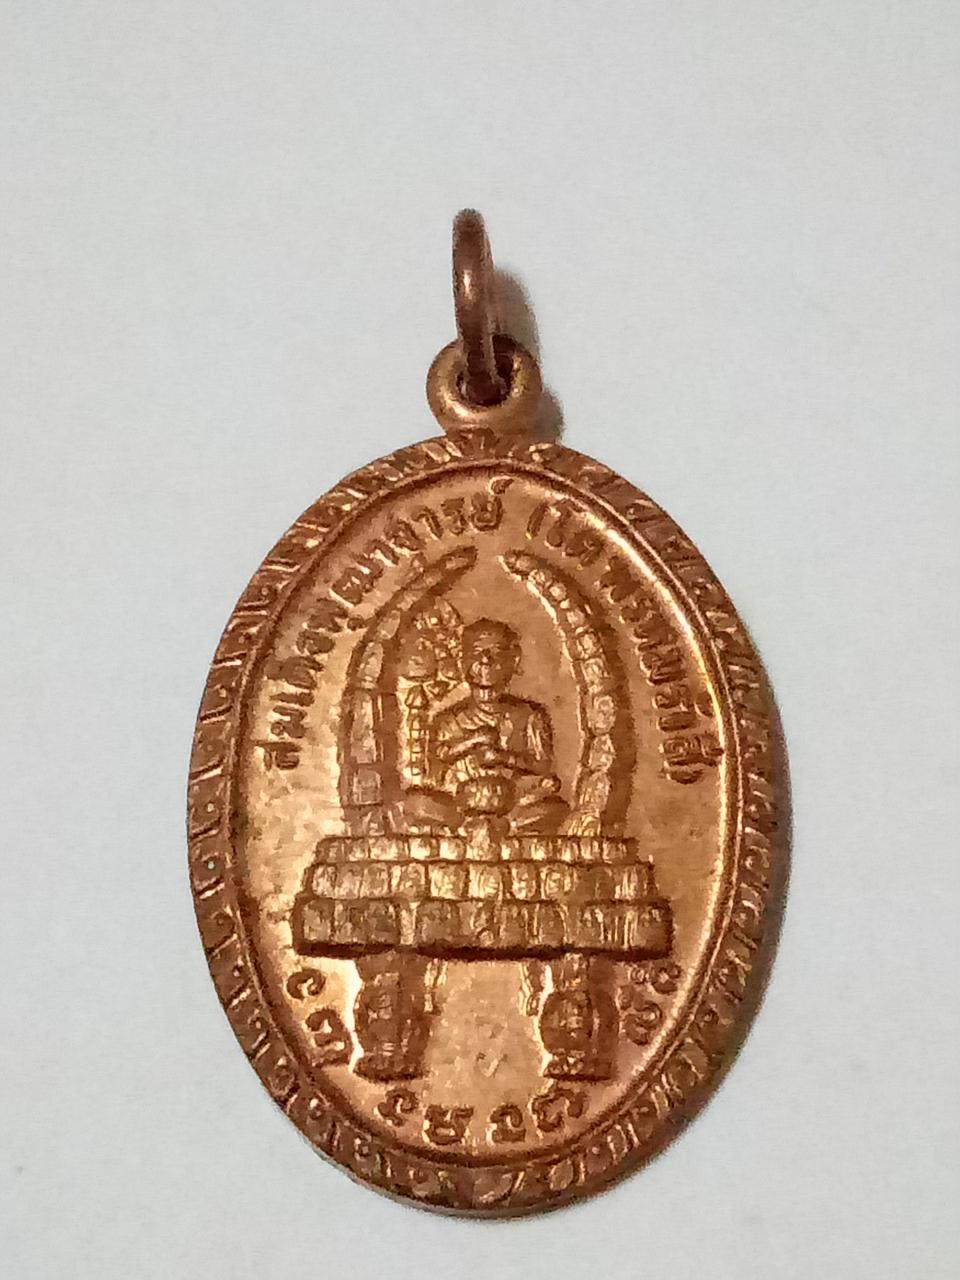 เหรียญสมเด็จพุฒาจารย์ (โต พรหมรังสี )หลัง พระพุทธบาท  วัดเขาวงพระจันทร์ ลพบุรี พ.ศ.2521 สอบถาม☎0865742988  line 🆔 vb288